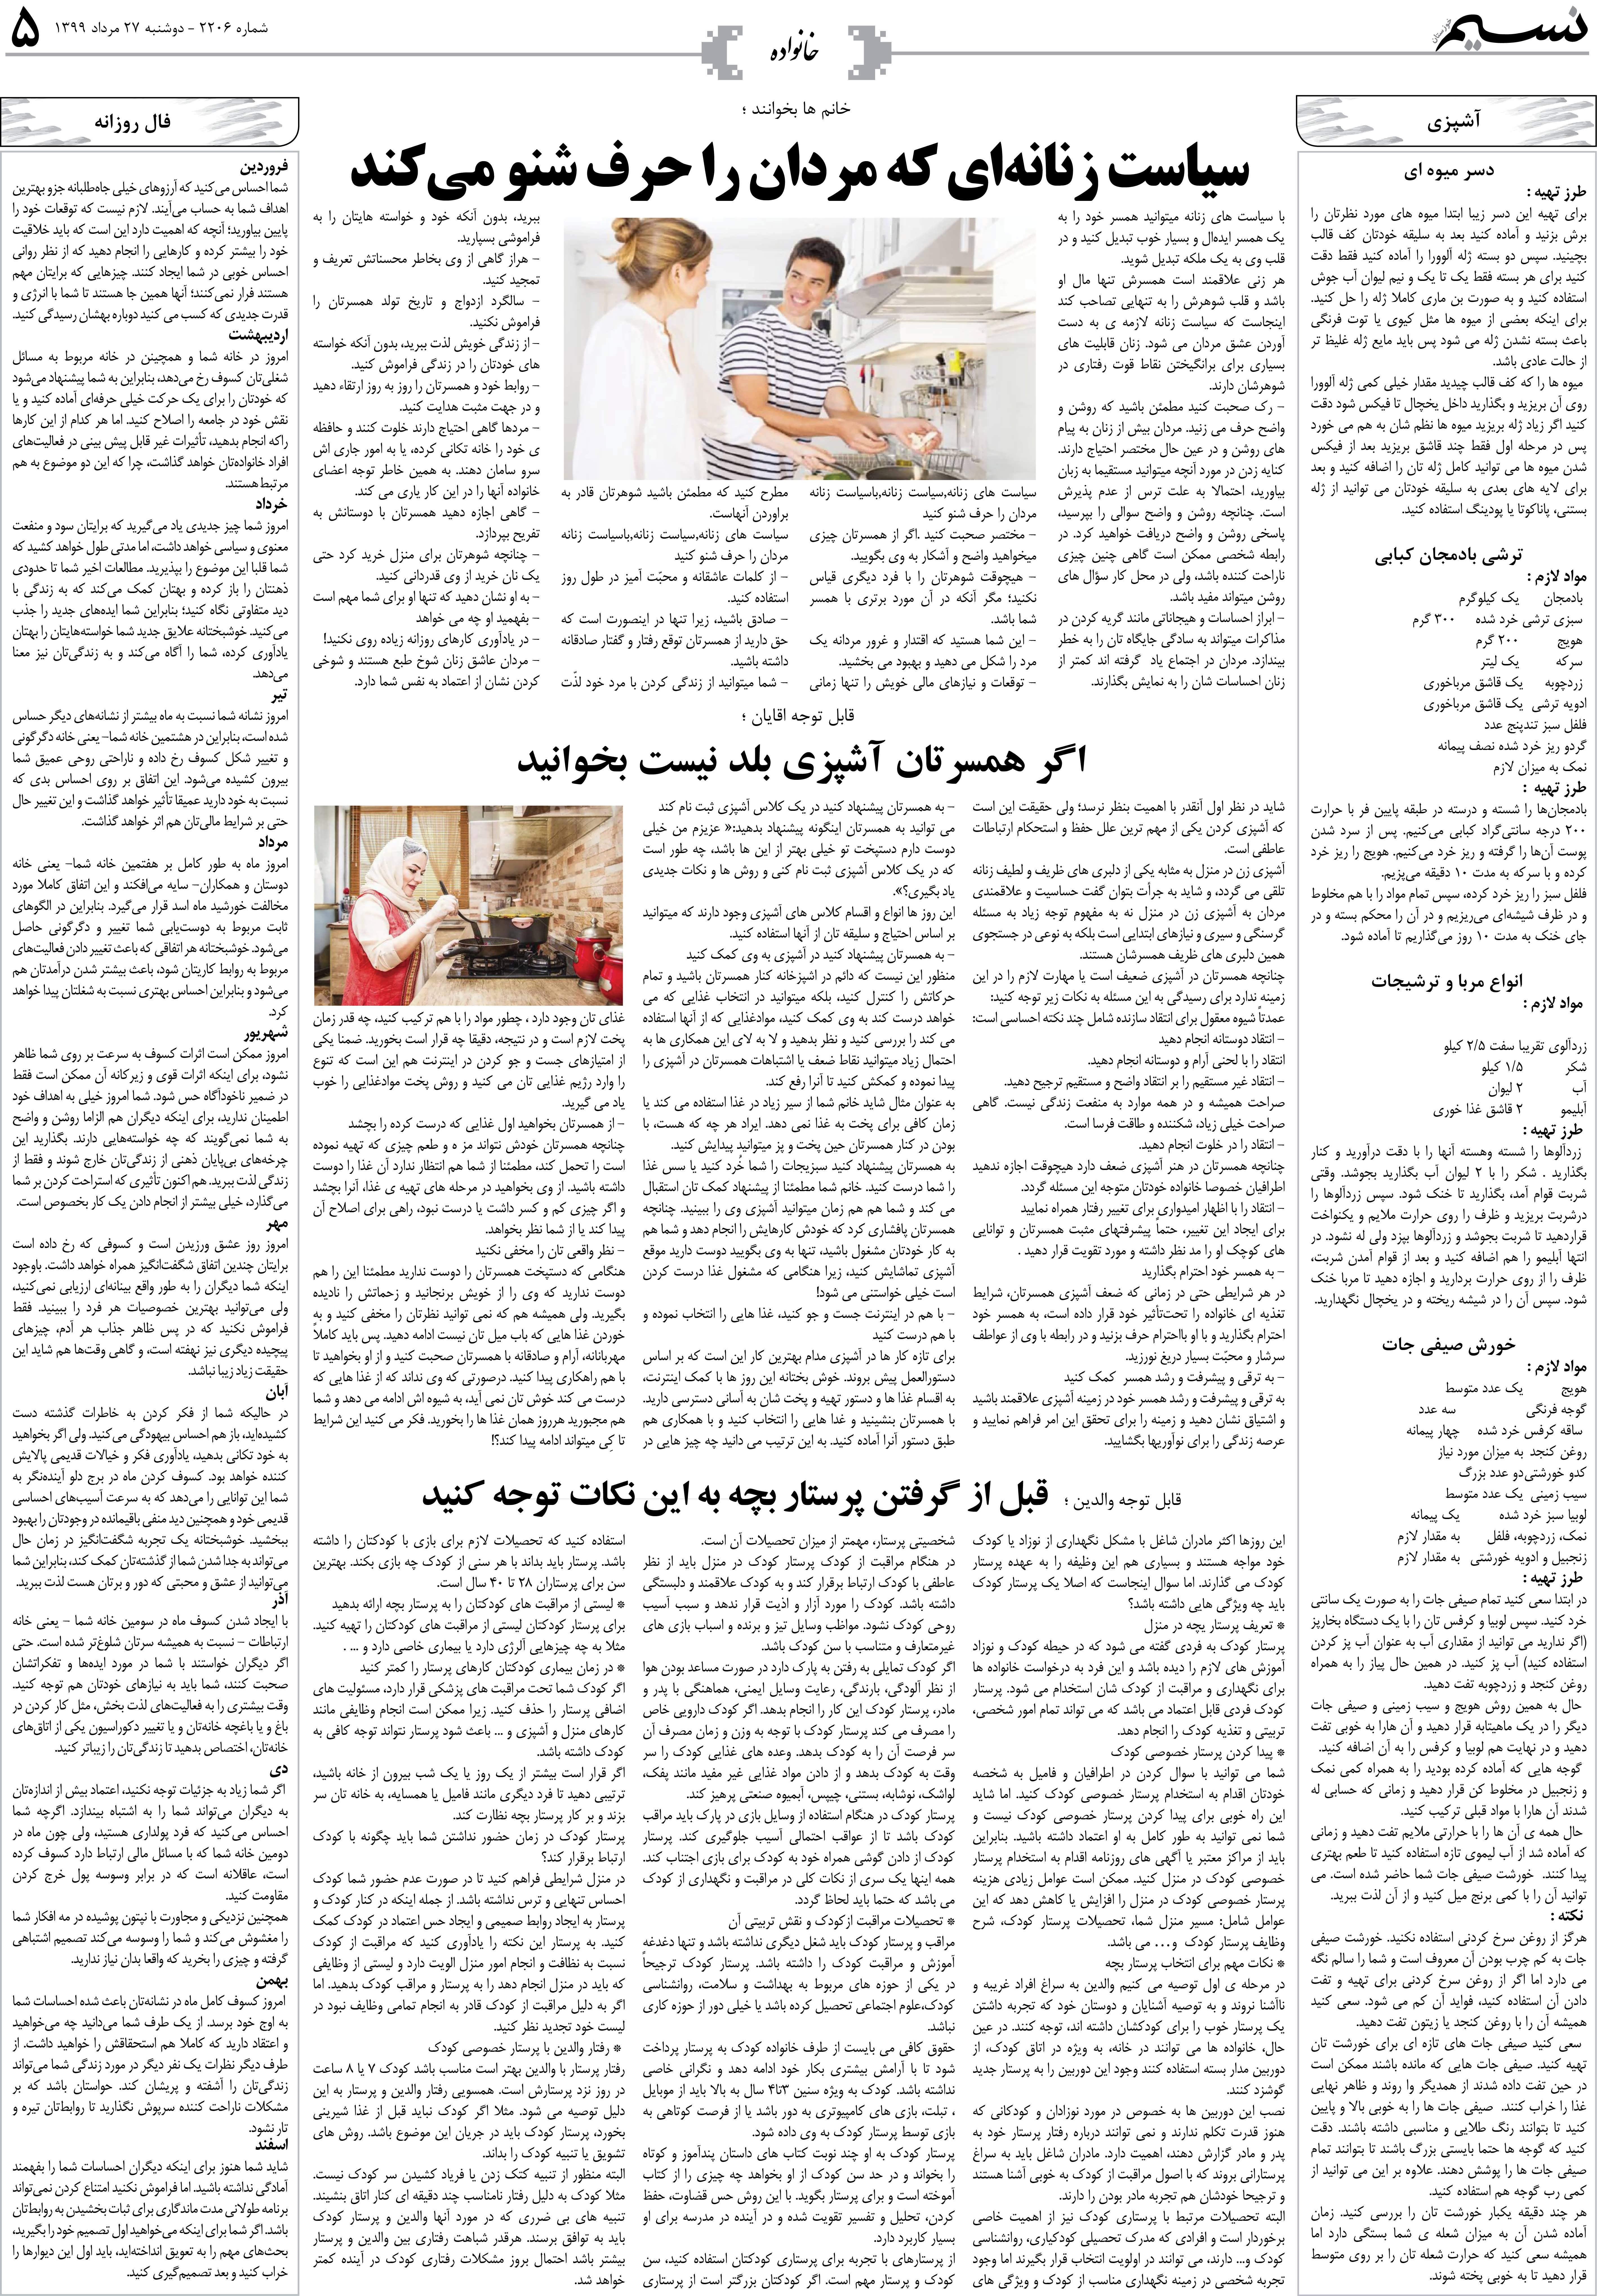 صفحه خانواده روزنامه نسیم شماره 2206